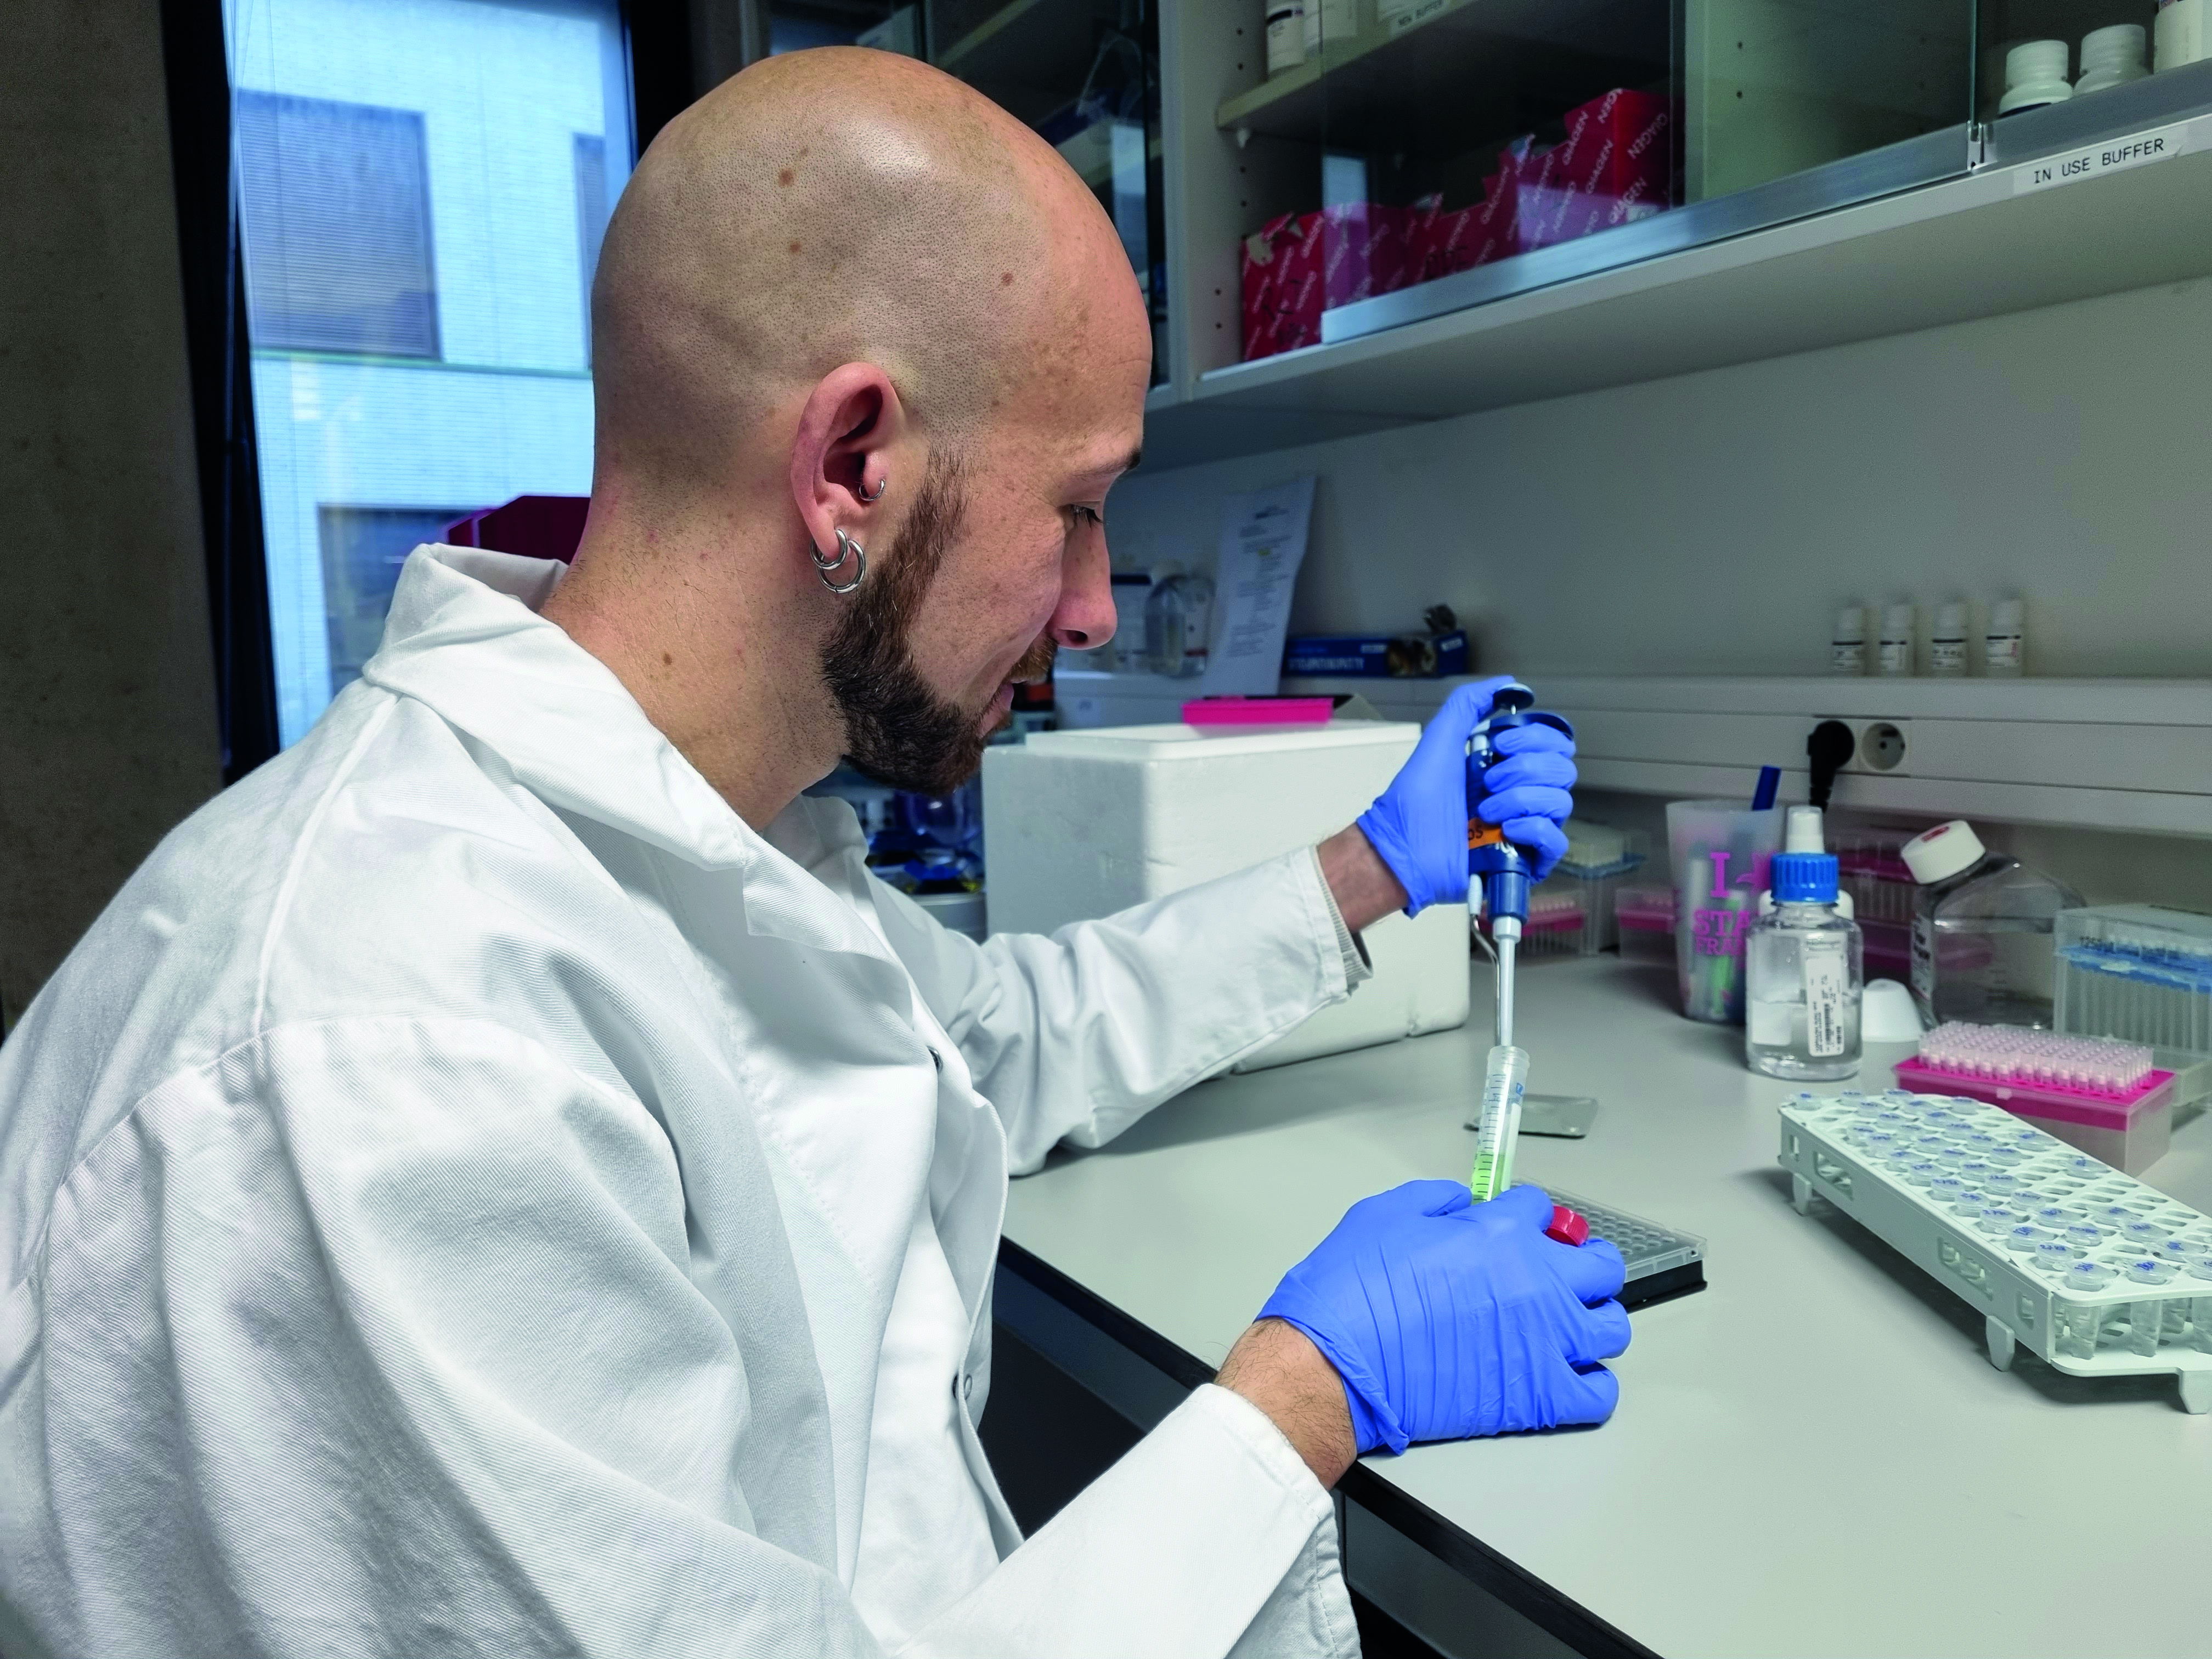 Onderzoeker Marcello Delfini werkt in het lab aan mechanismen van resistentie tegen immuuntherapie. ©️Ilse Boeren